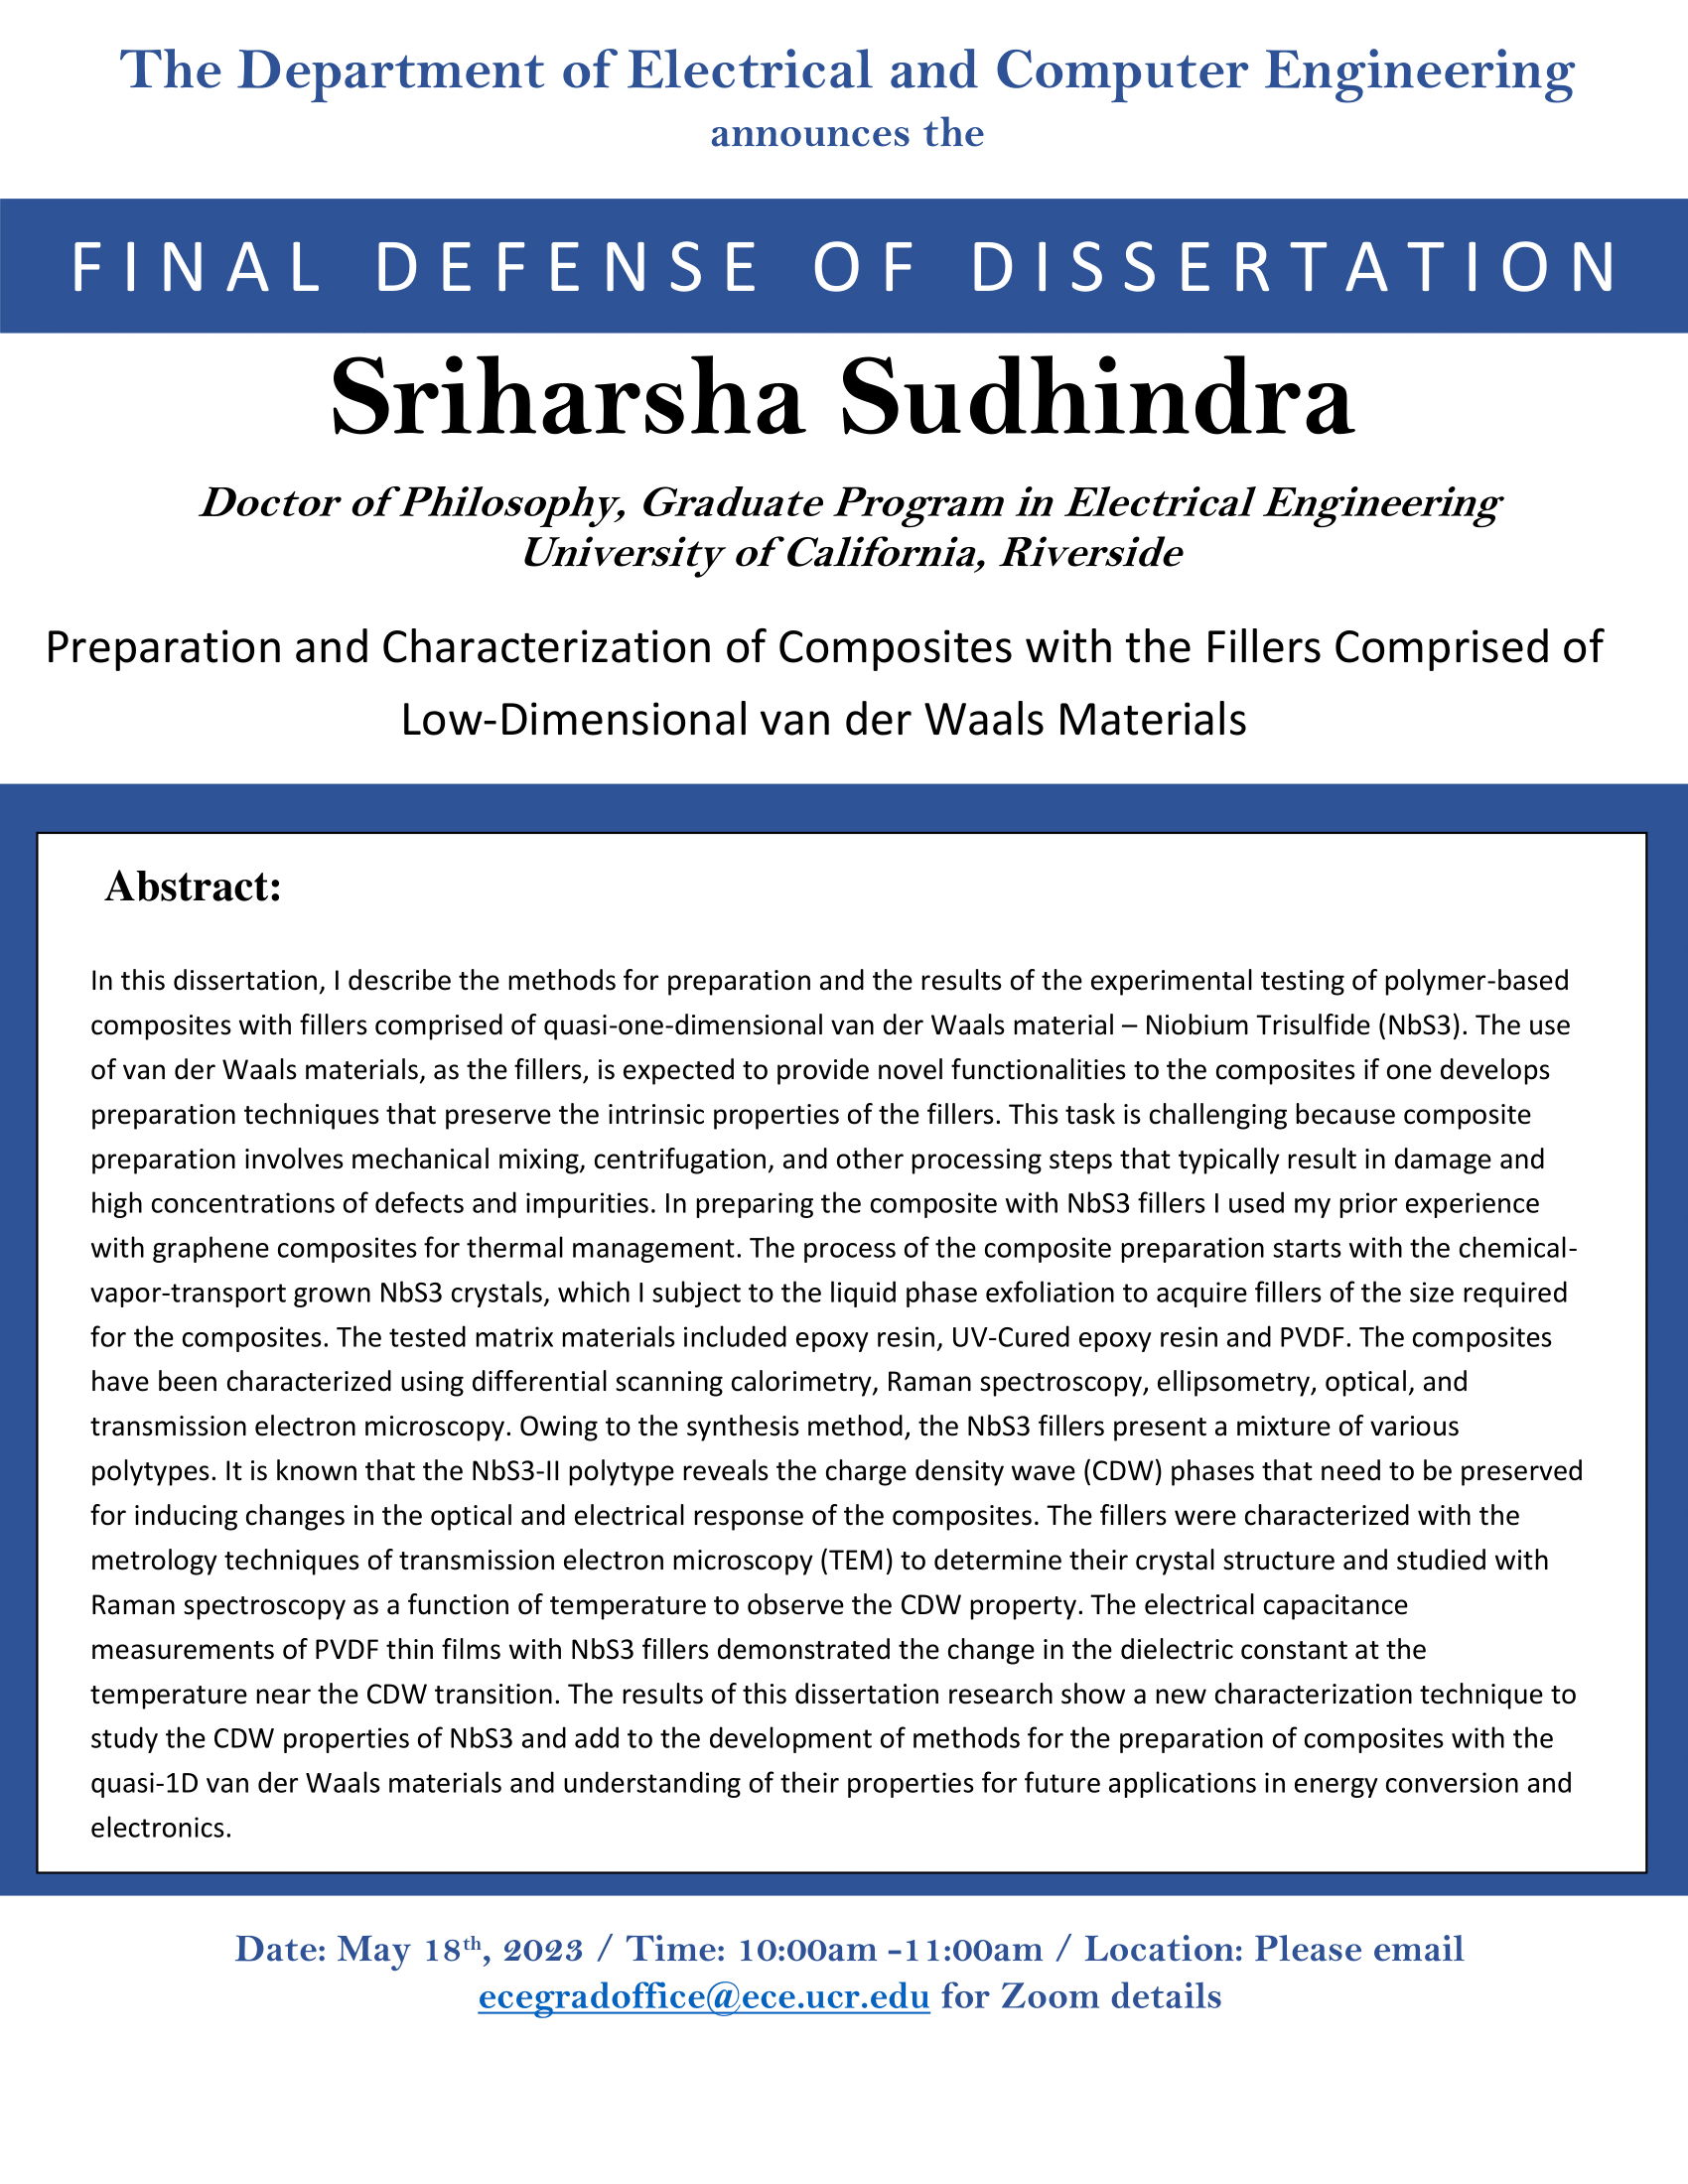 Sriharsha Sudhindra